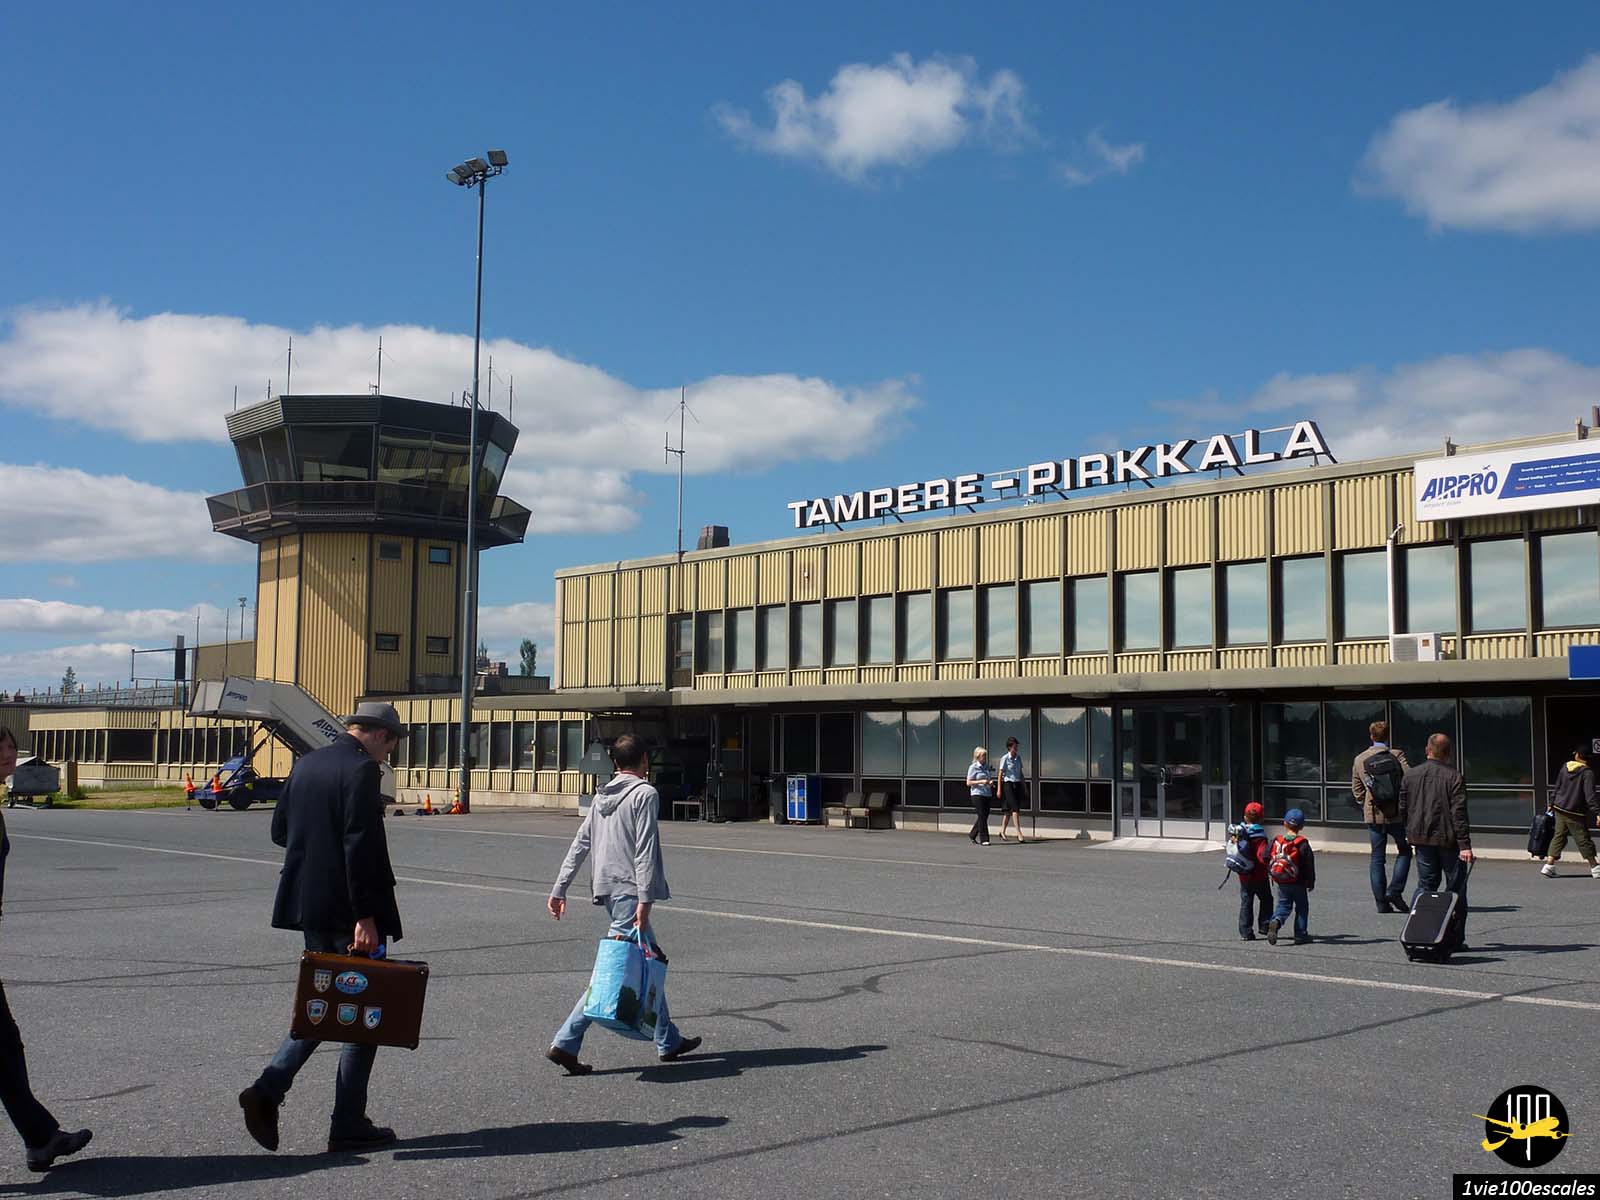 Arrivée sur le tarmac de l'Aéroport de Tampere Pirkkala en Finlande